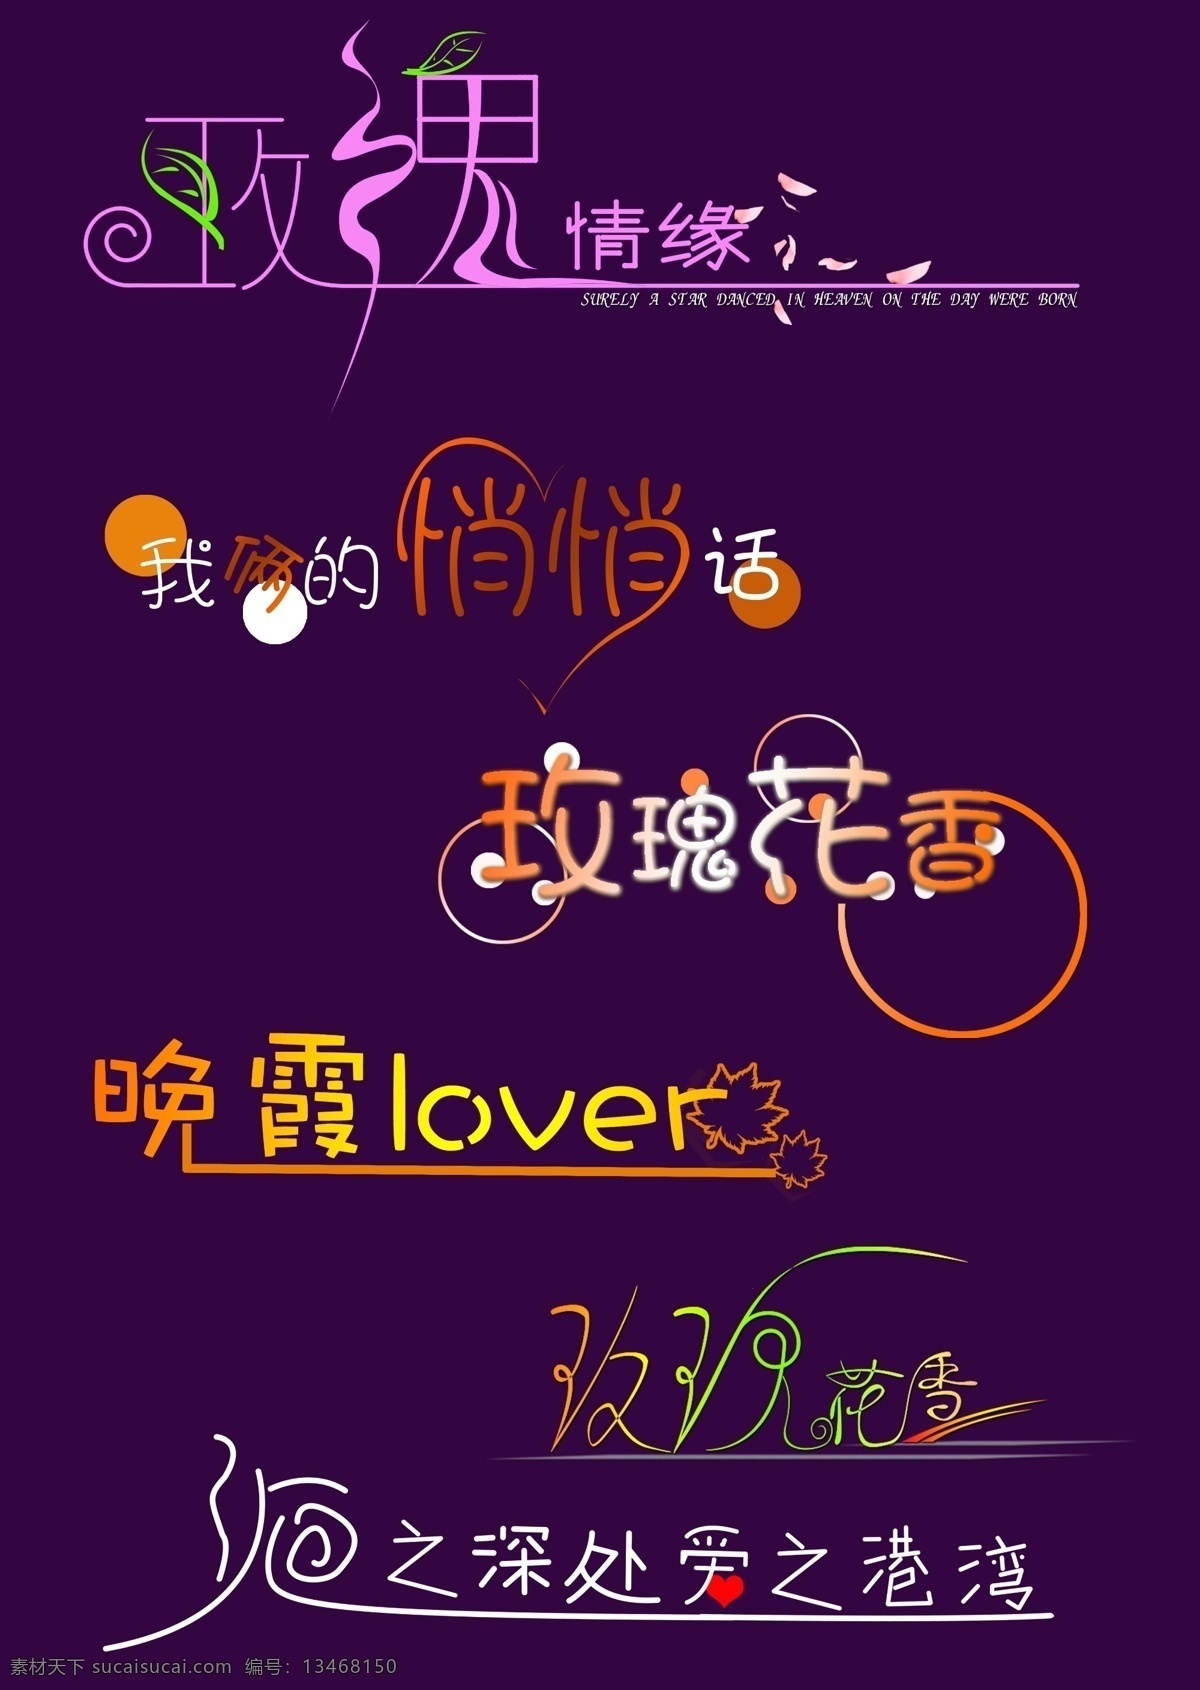 创意 美工 字 创意美工字 艺术字 字体 设计艺术 中国字 传 艺术 psd源文件